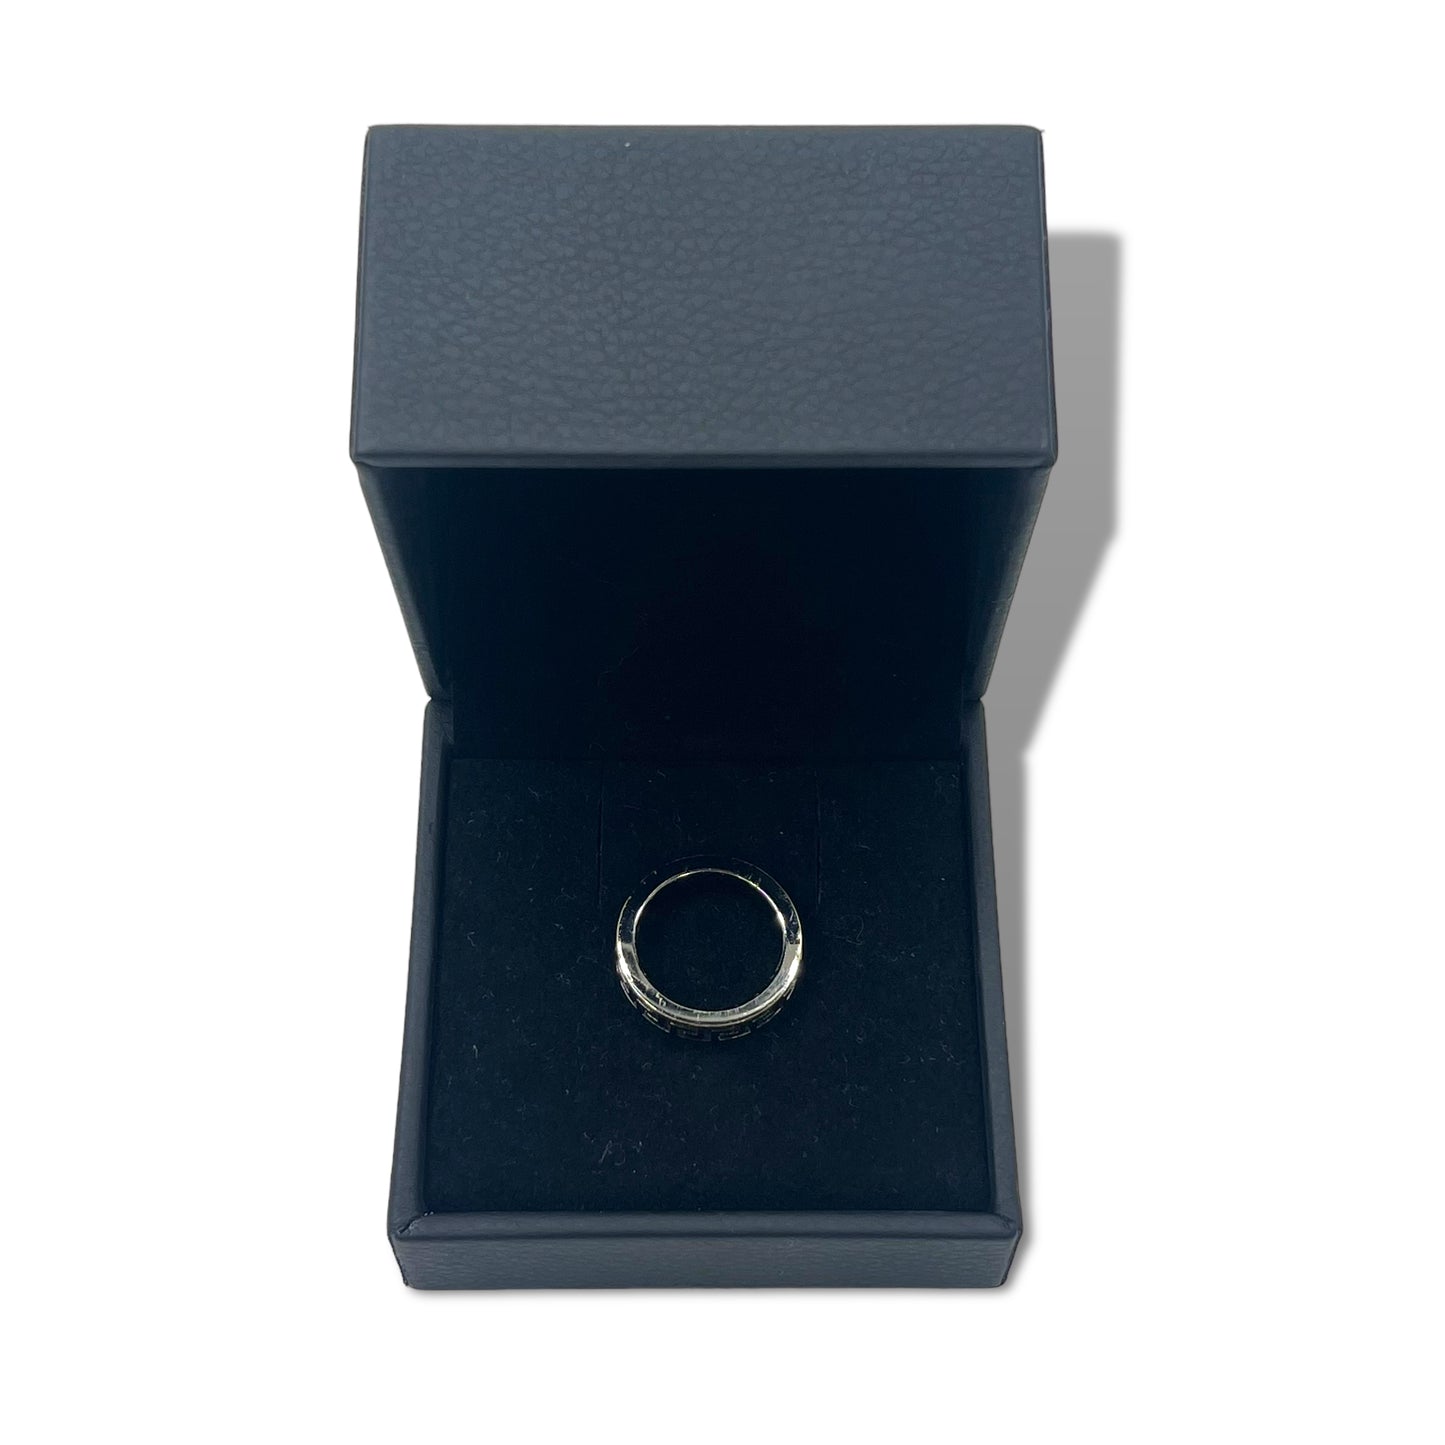 VERSACE グリークリング 指輪 16号 シルバー メタル メデューサ ロゴモチーフ イタリア製